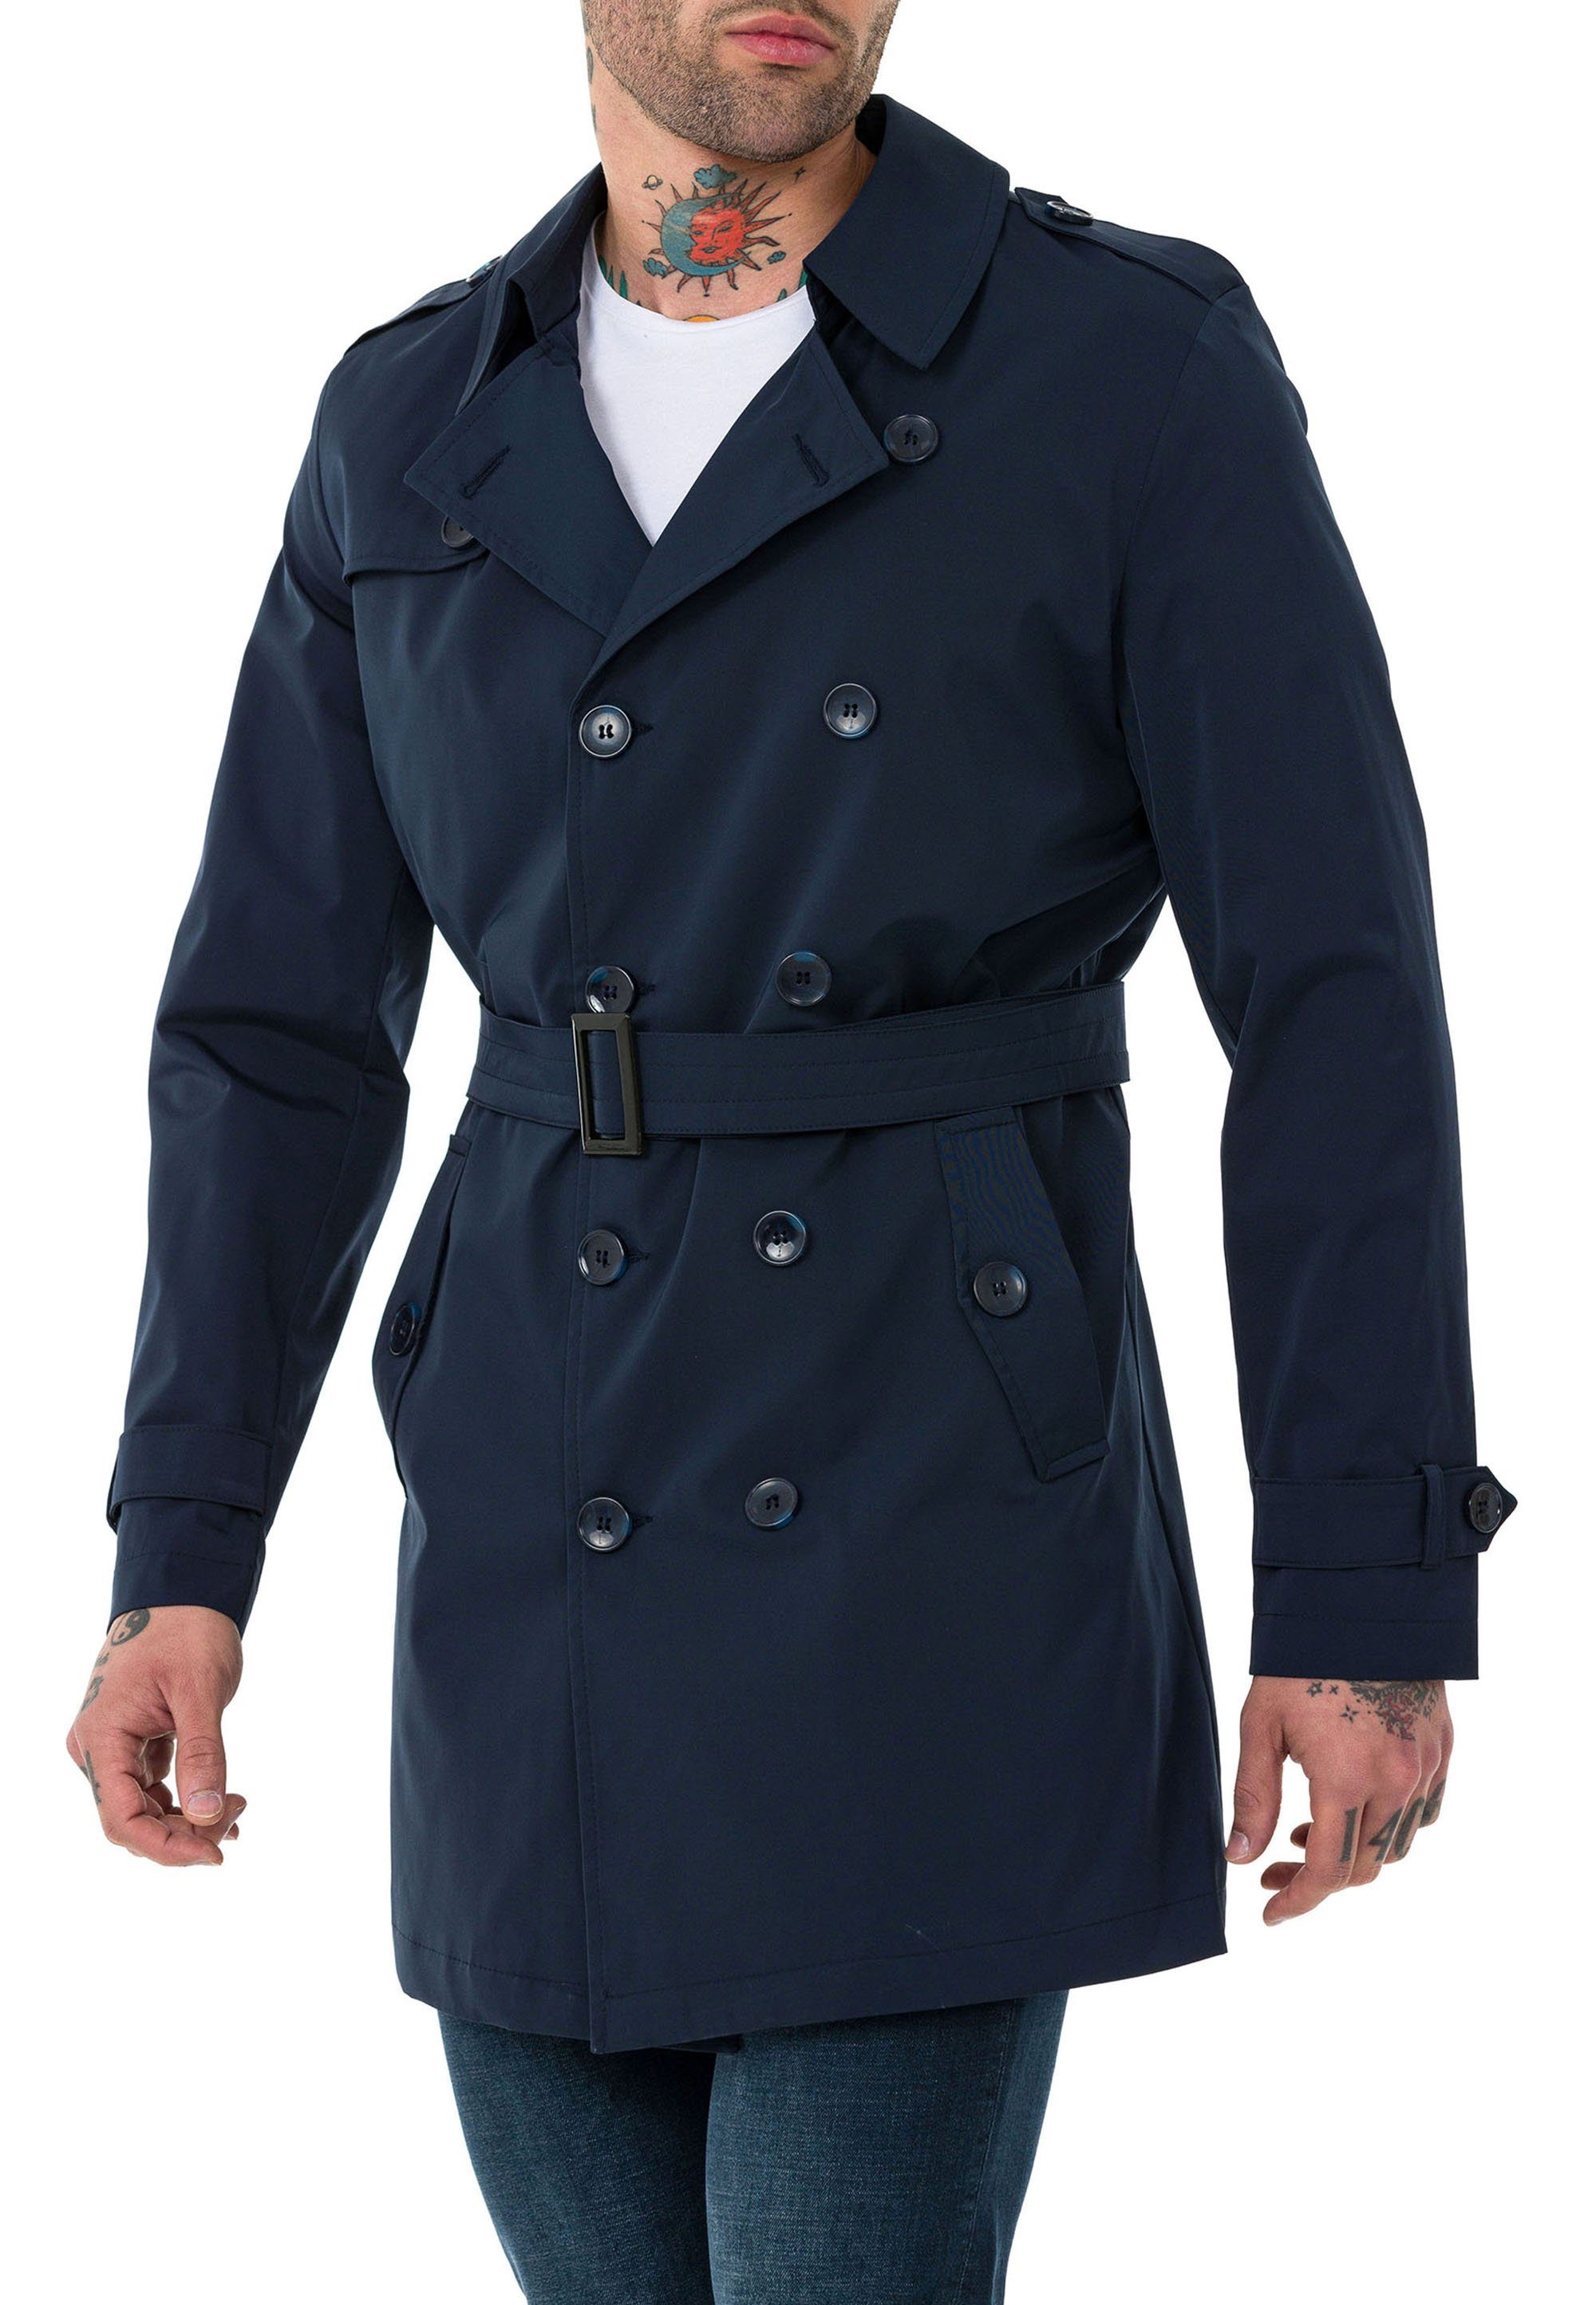 RedBridge Trenchcoat Mantel mit Gürtelschnalle Premium Qualität Navy Blau